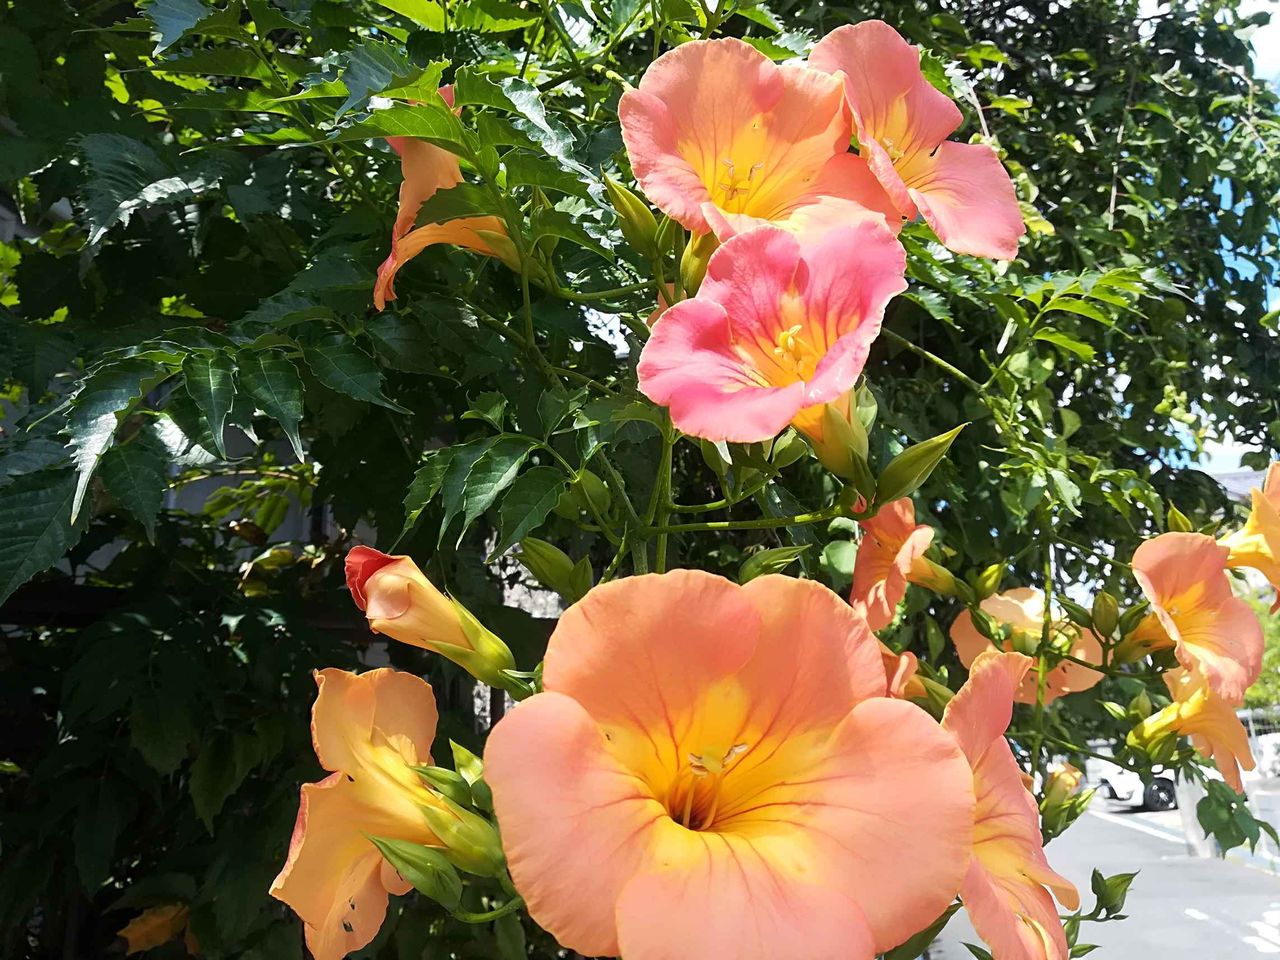 高槻の街かどでノウゼンカズラが咲いてきてる オレンジ色の花が特徴 高槻network新聞